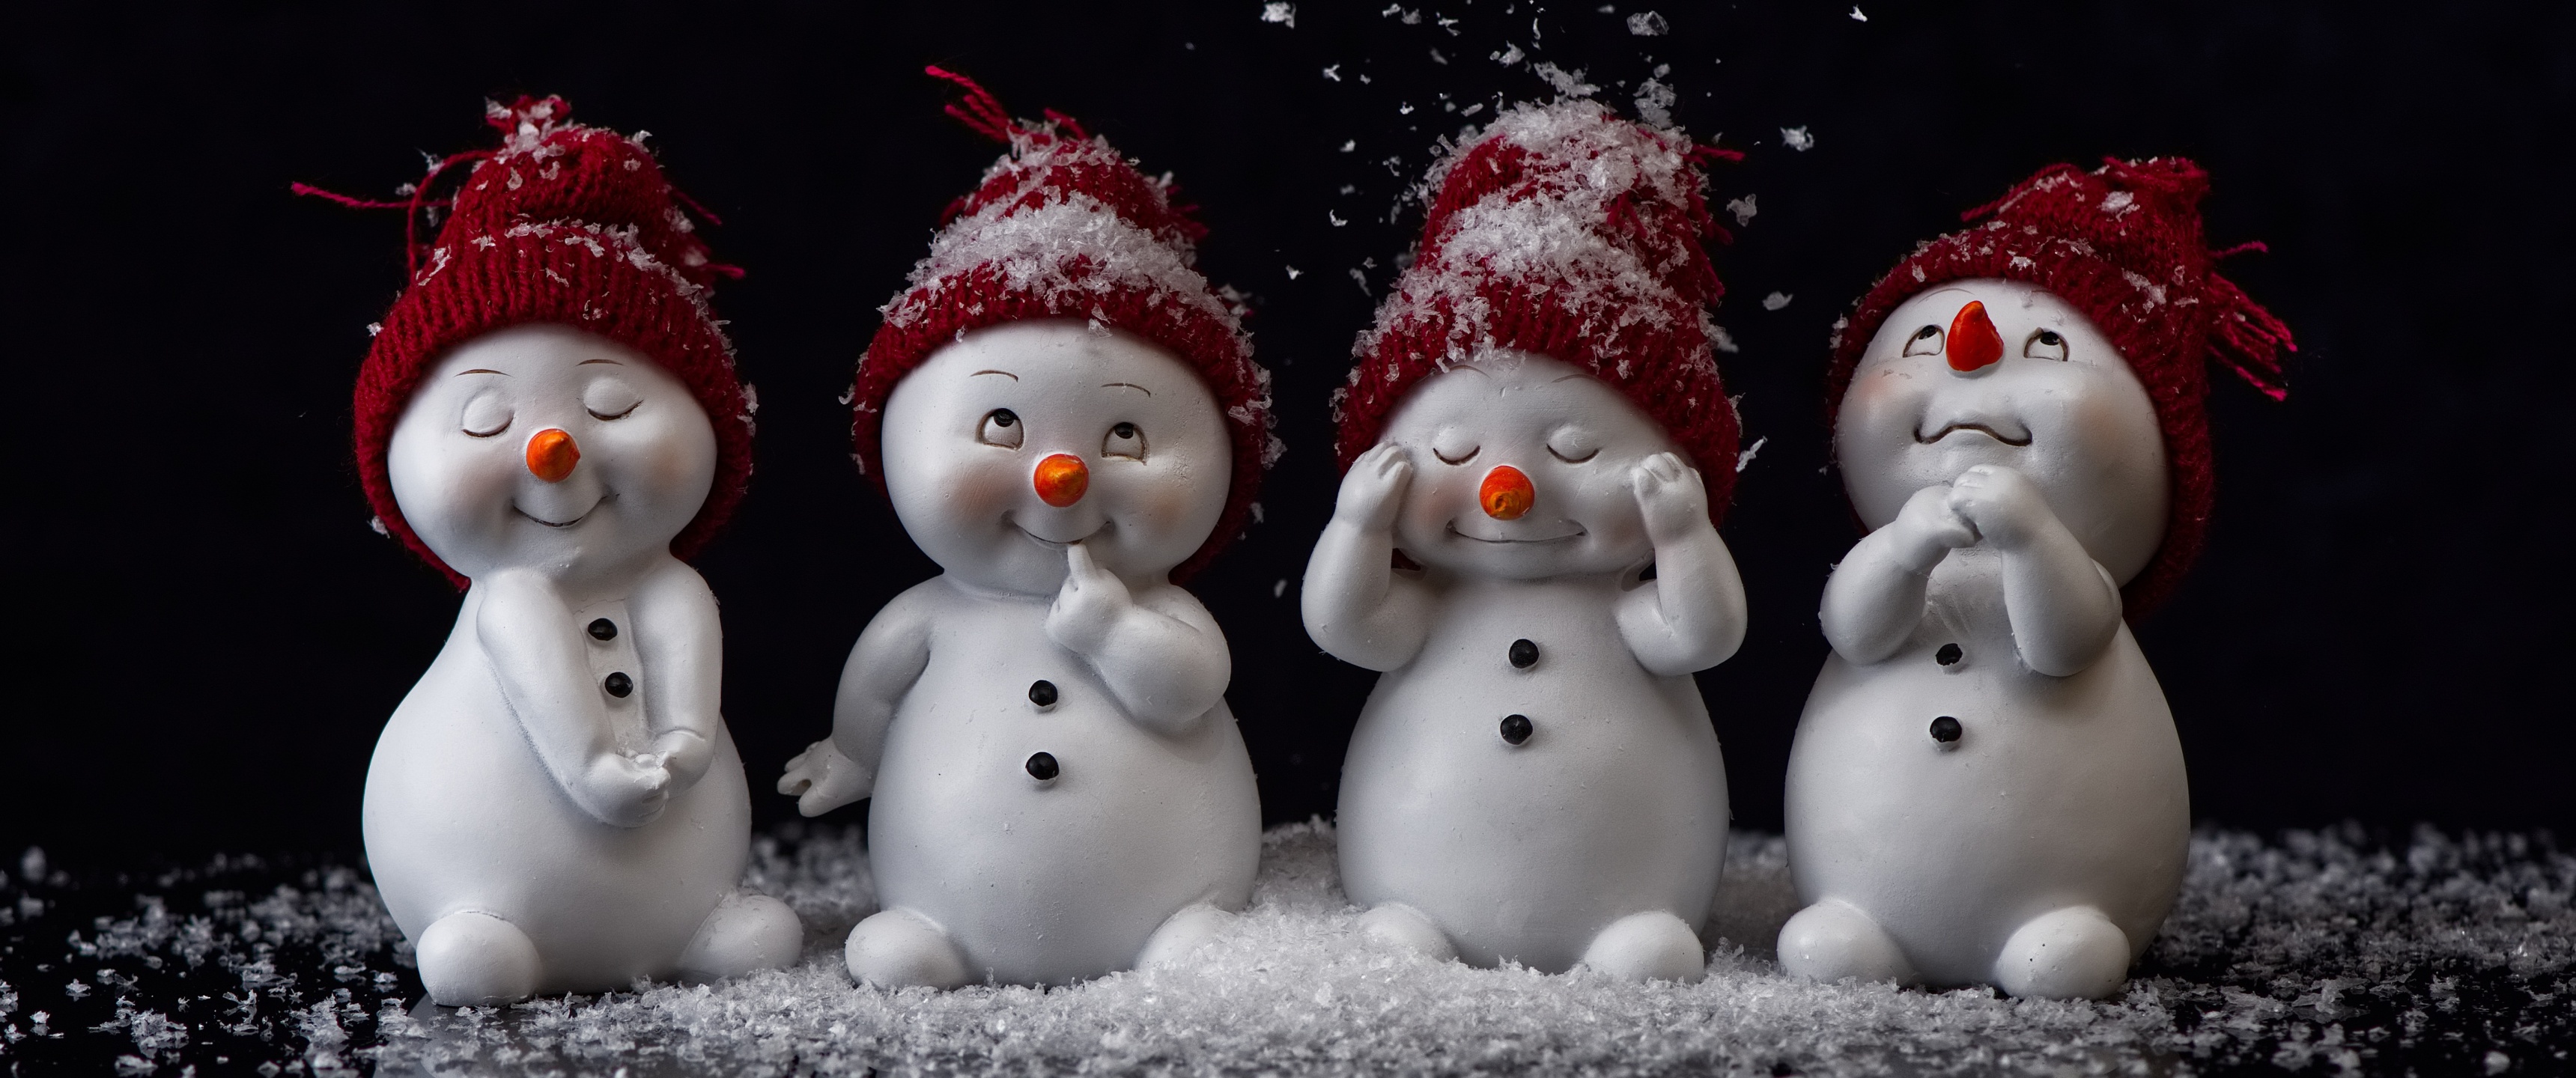 Người tuyết là biểu tượng của mùa đông và Giáng sinh! Nếu bạn muốn tìm kiếm một hình ảnh đáng yêu về người tuyết, thì đây là điều bạn đang tìm kiếm. Hãy xem hình ảnh này để cảm nhận cảm giác ấm áp và niềm vui. Translation: Snowman is an icon of winter and Christmas! If you are looking for a cute snowman image, this is what you are looking for. Check out this image to feel warm and joyful.